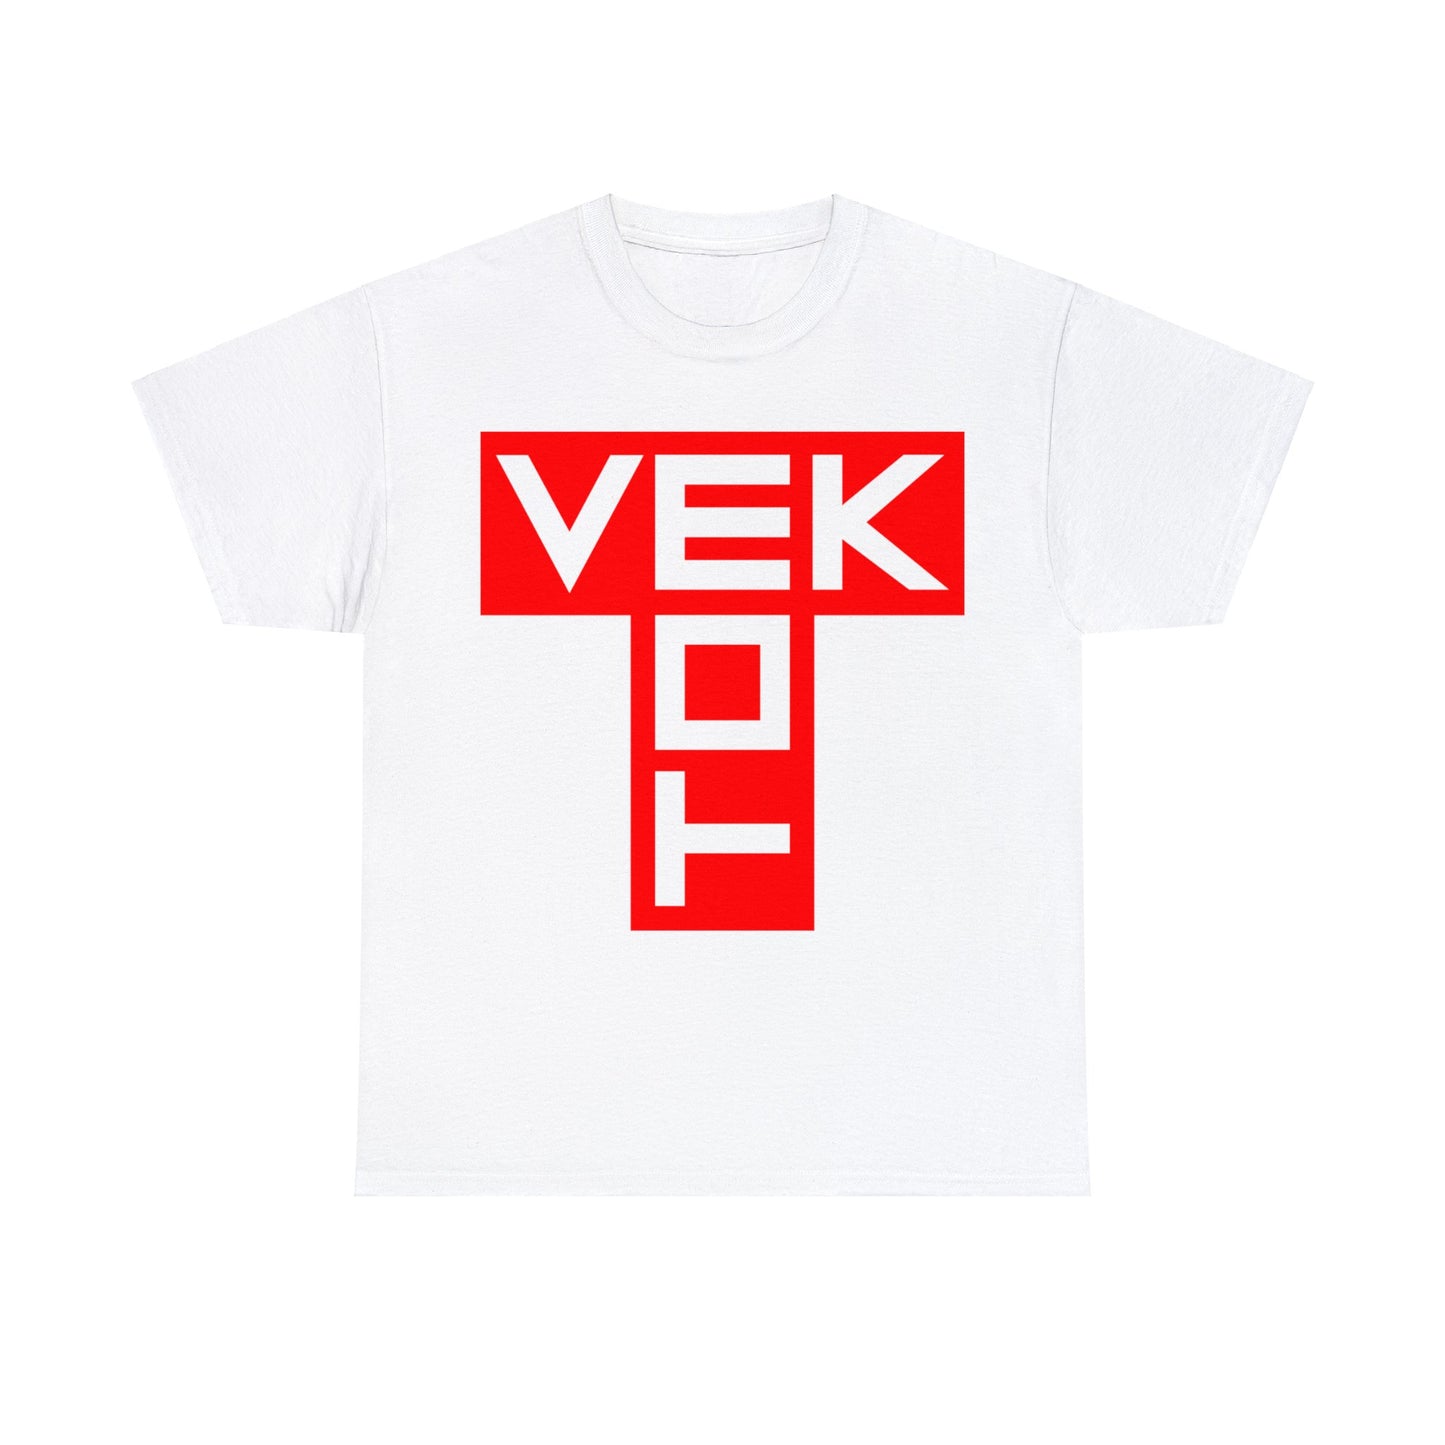 Tom Vek Big T logo EU white T-shirt